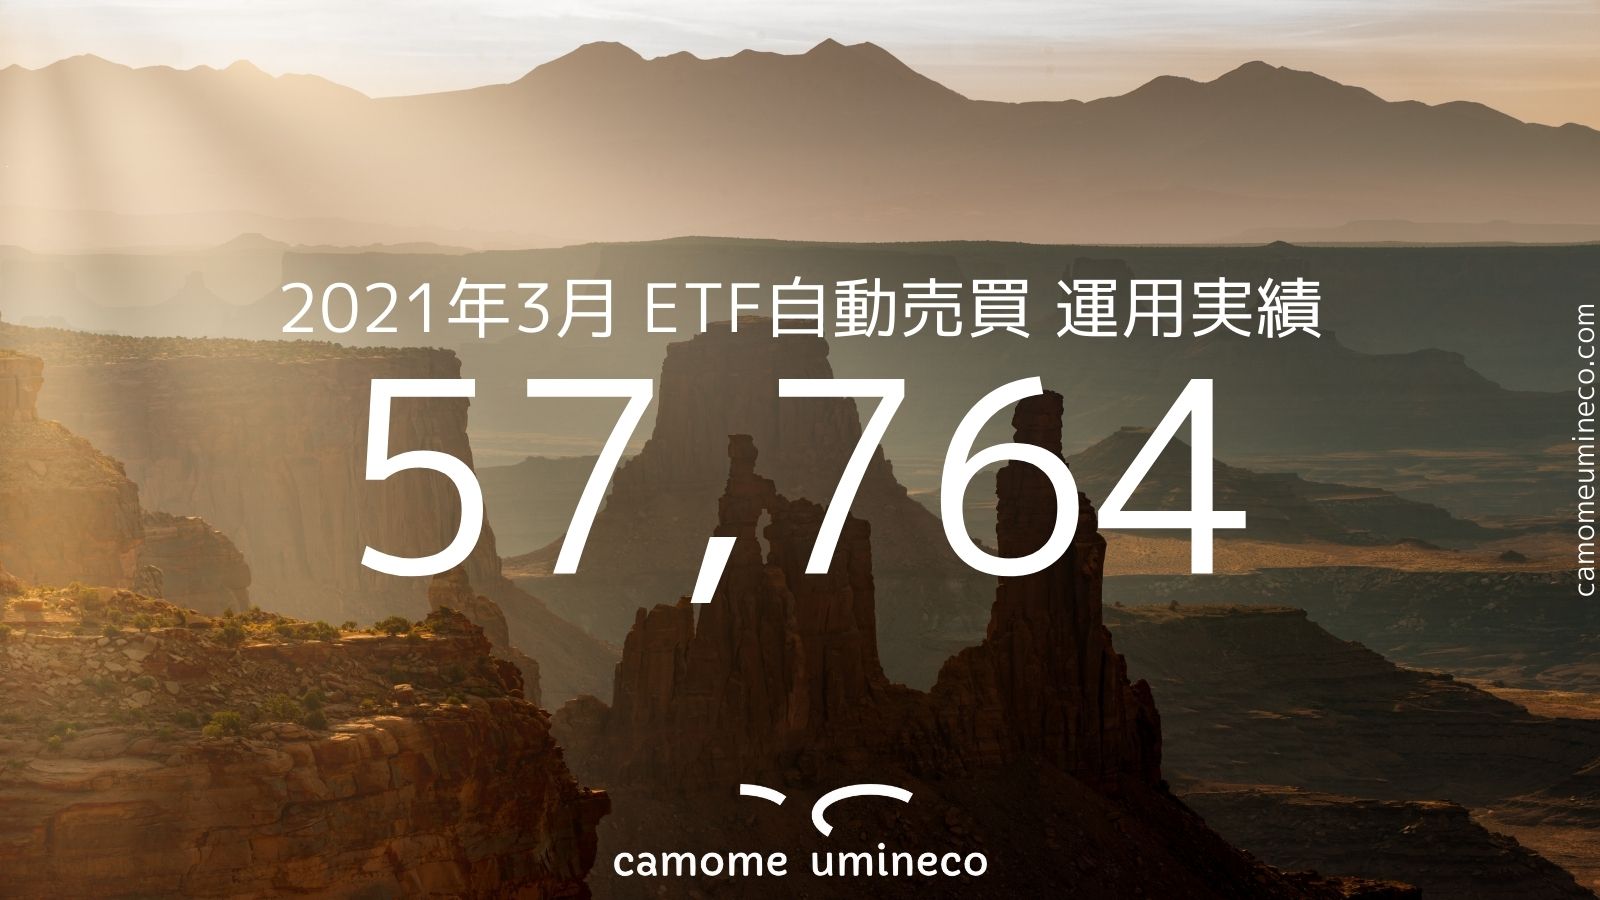 【トライオートETF】2021年3月 運用実績 57,764円